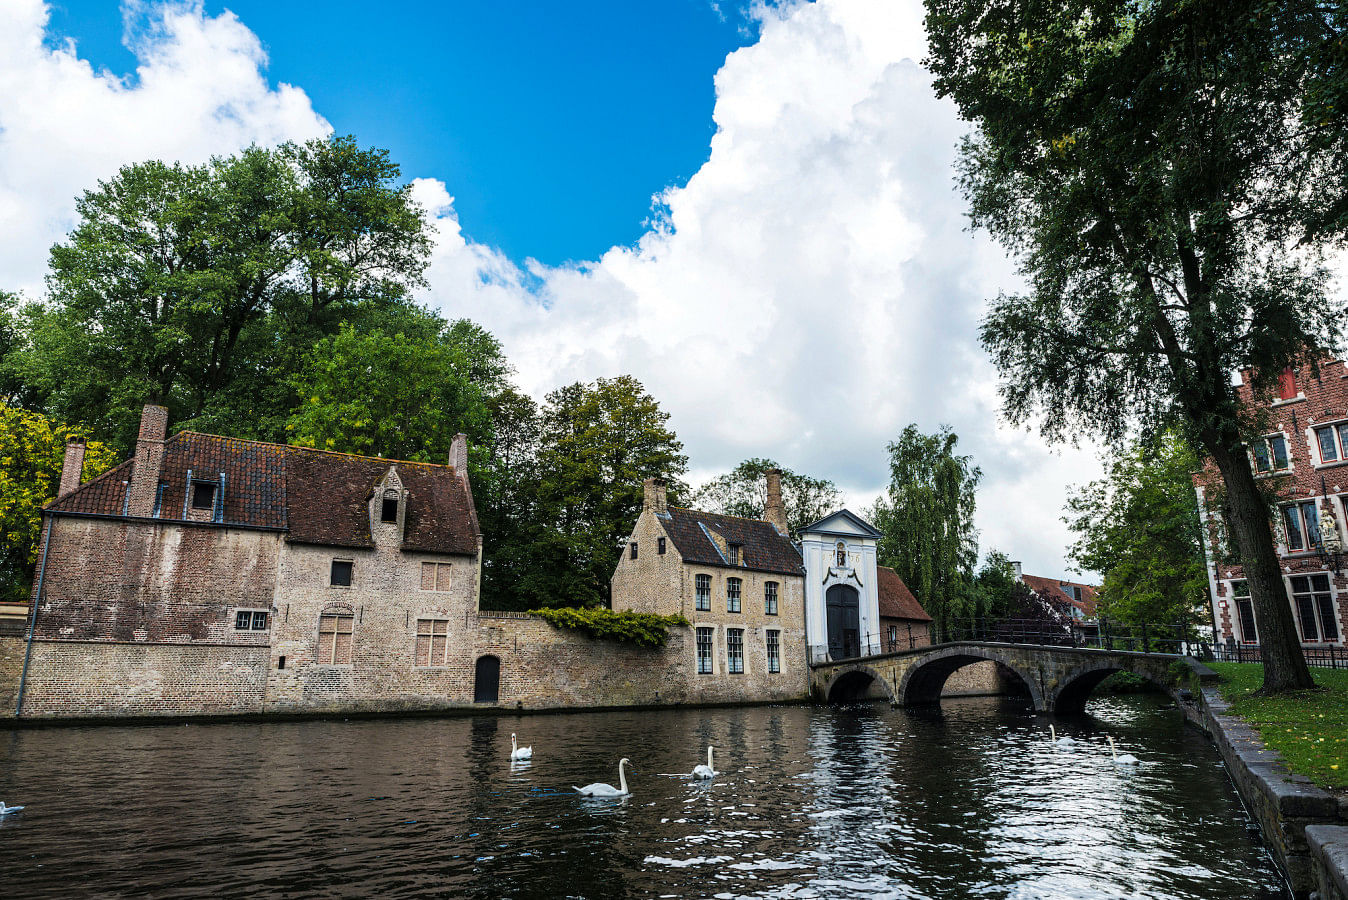 Hyr en båt i Bruges